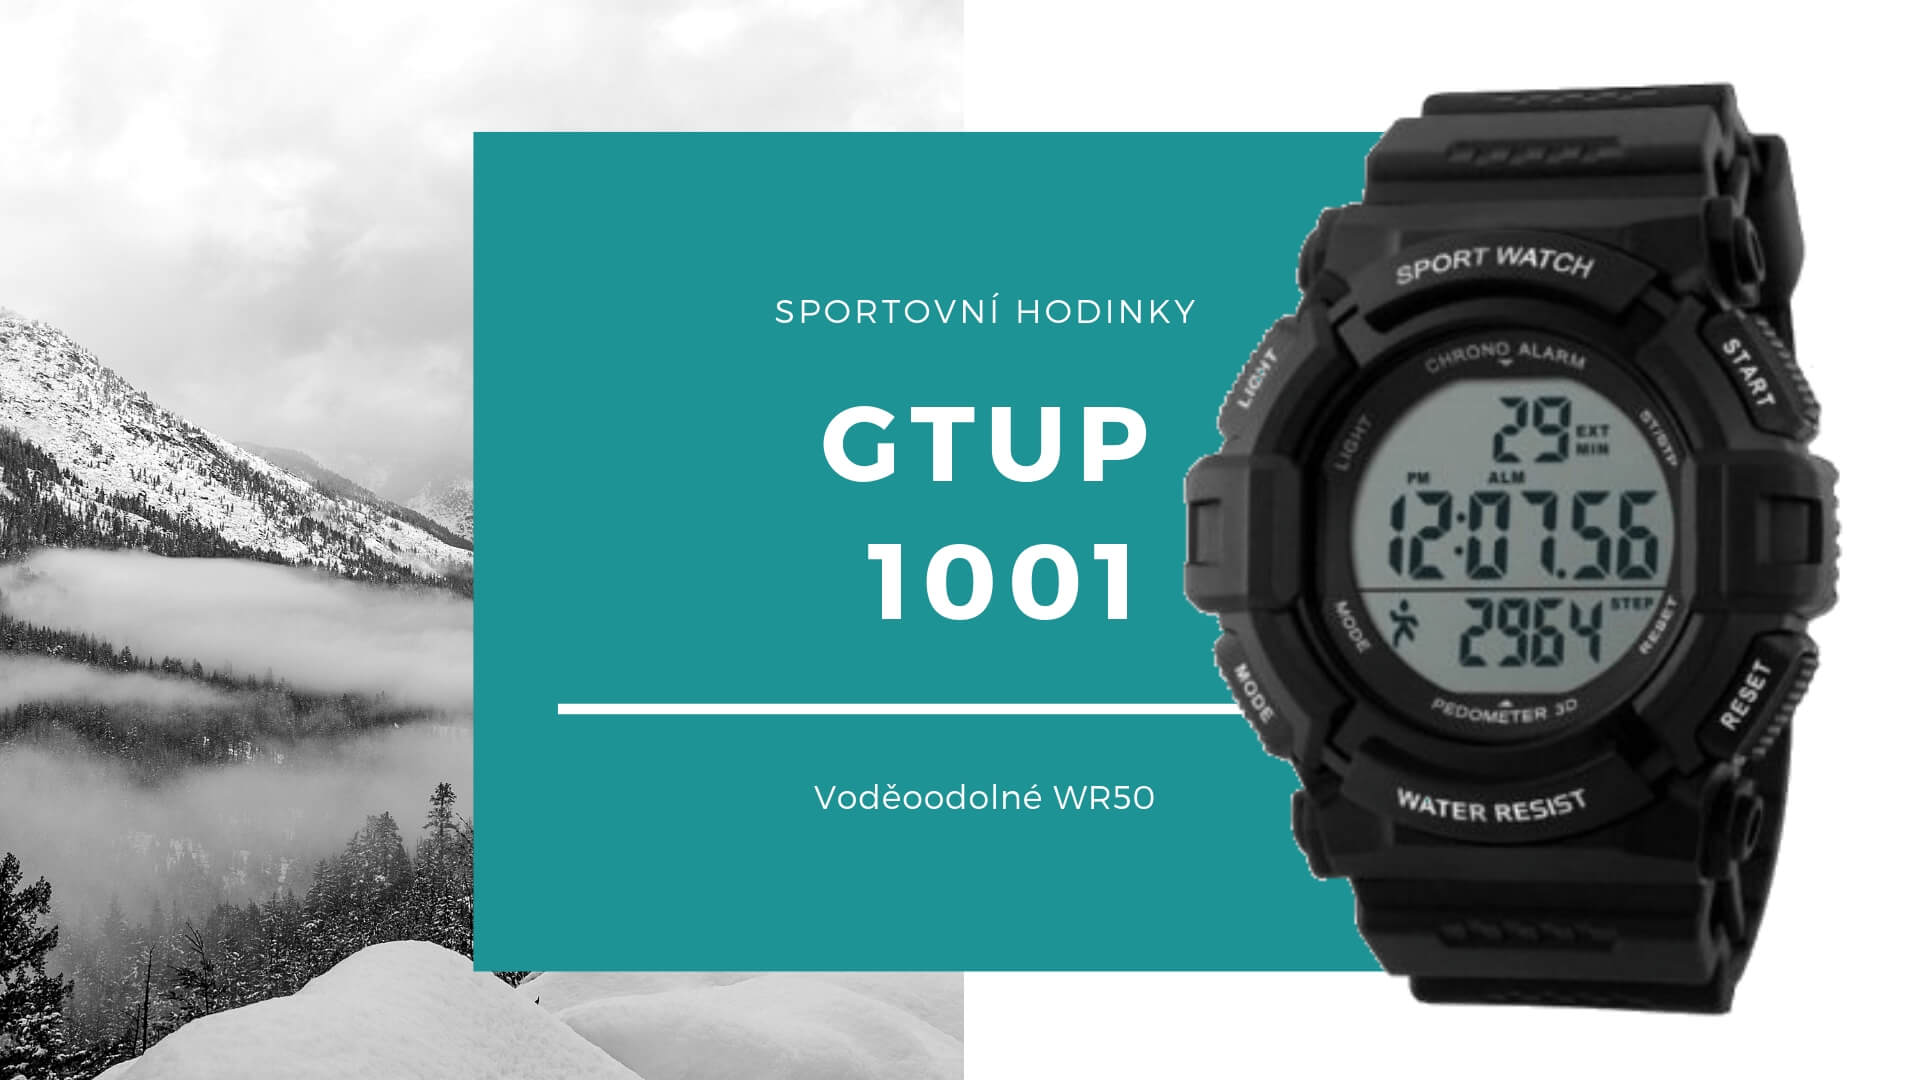 Sportovní hodinky GTUP 1001 (1)